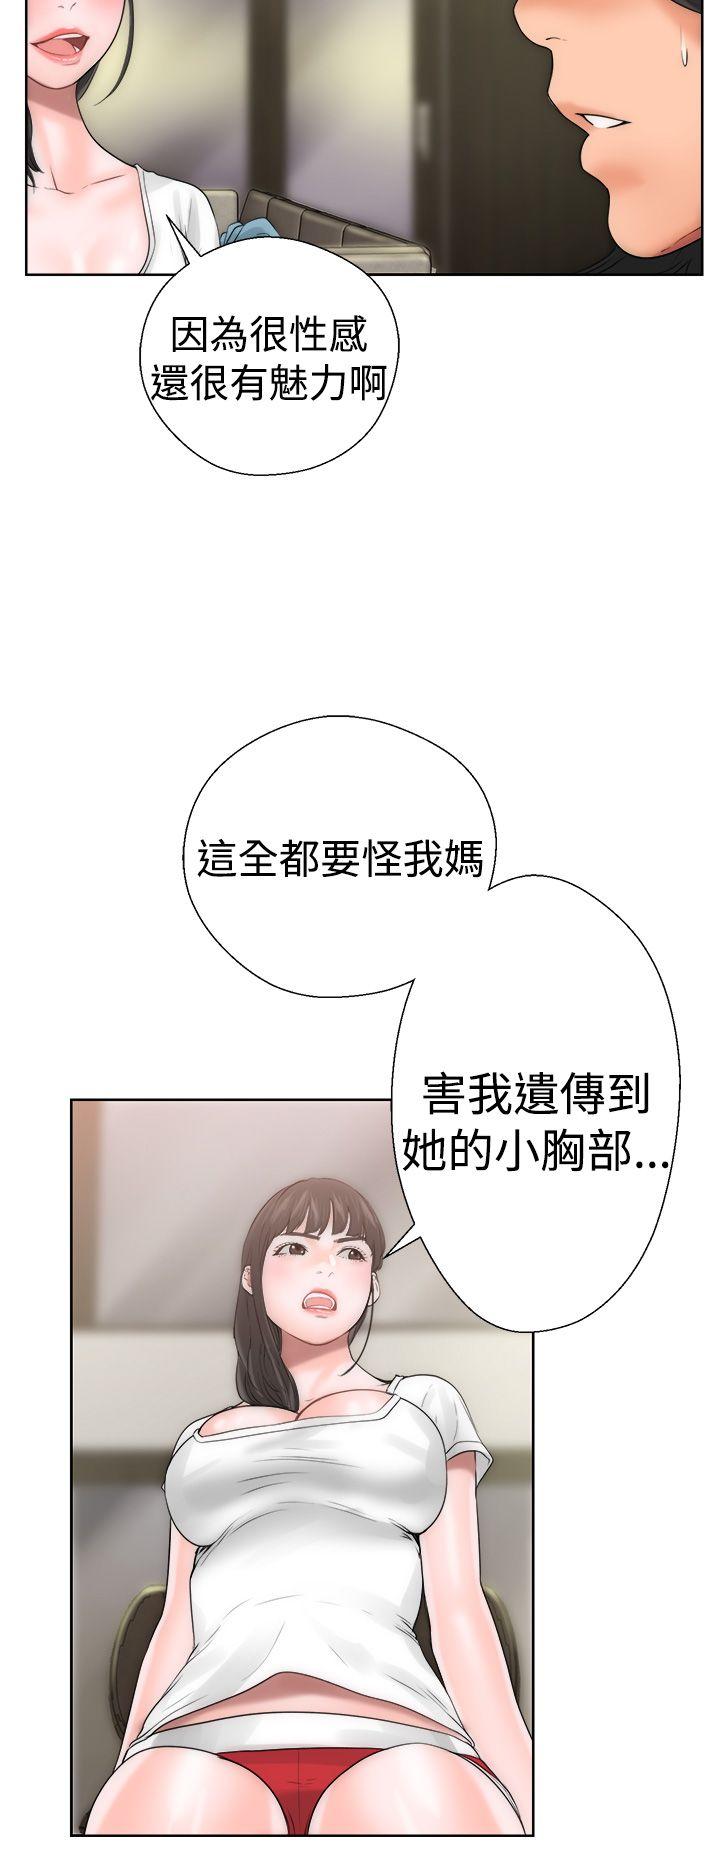 韩国污漫画 解禁:初始的快感 第10话 33